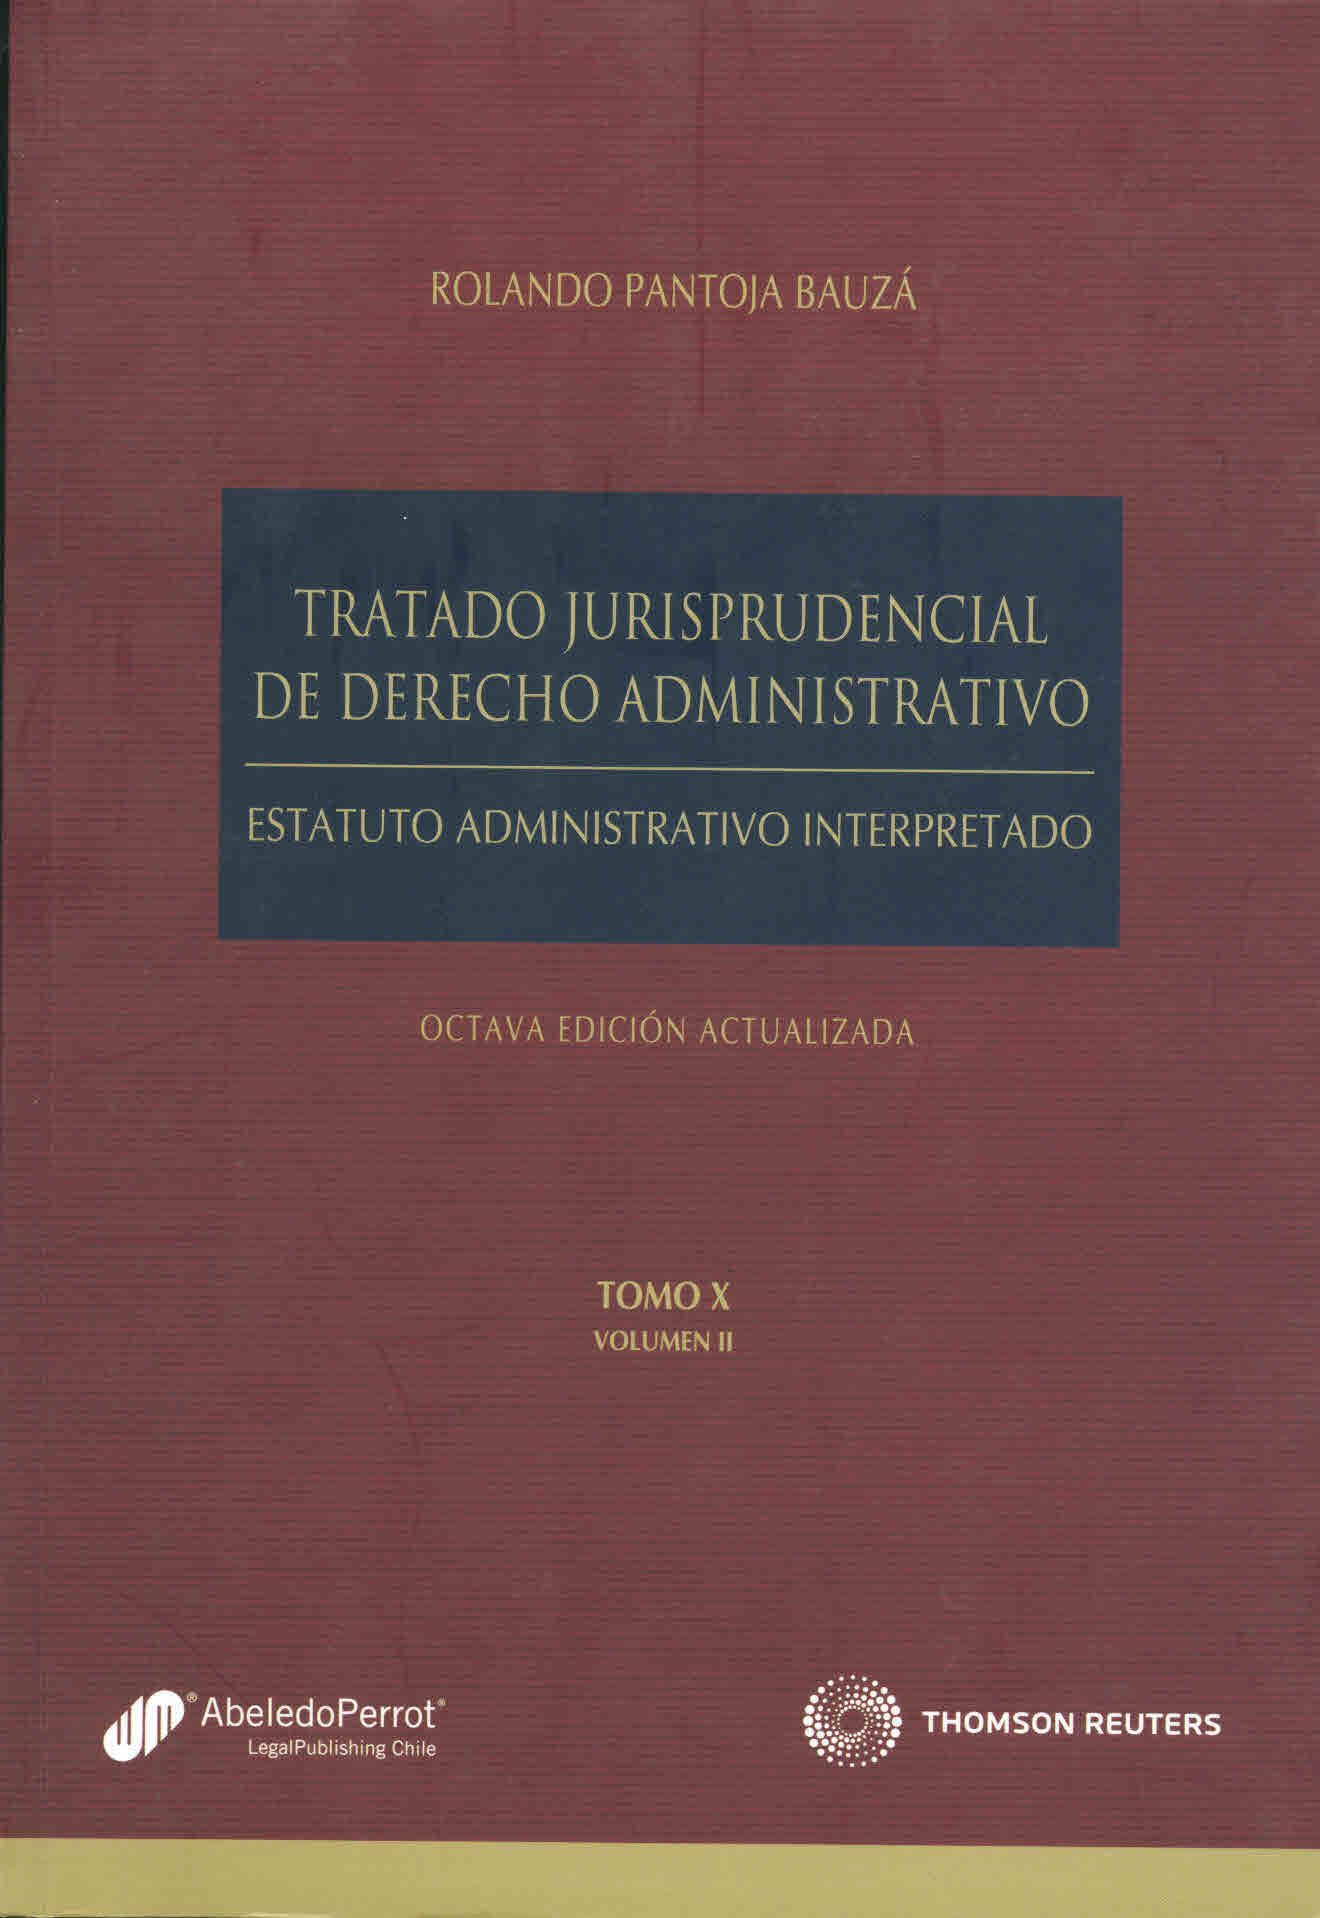 Tratado jurisprudencial de derecho administrativo